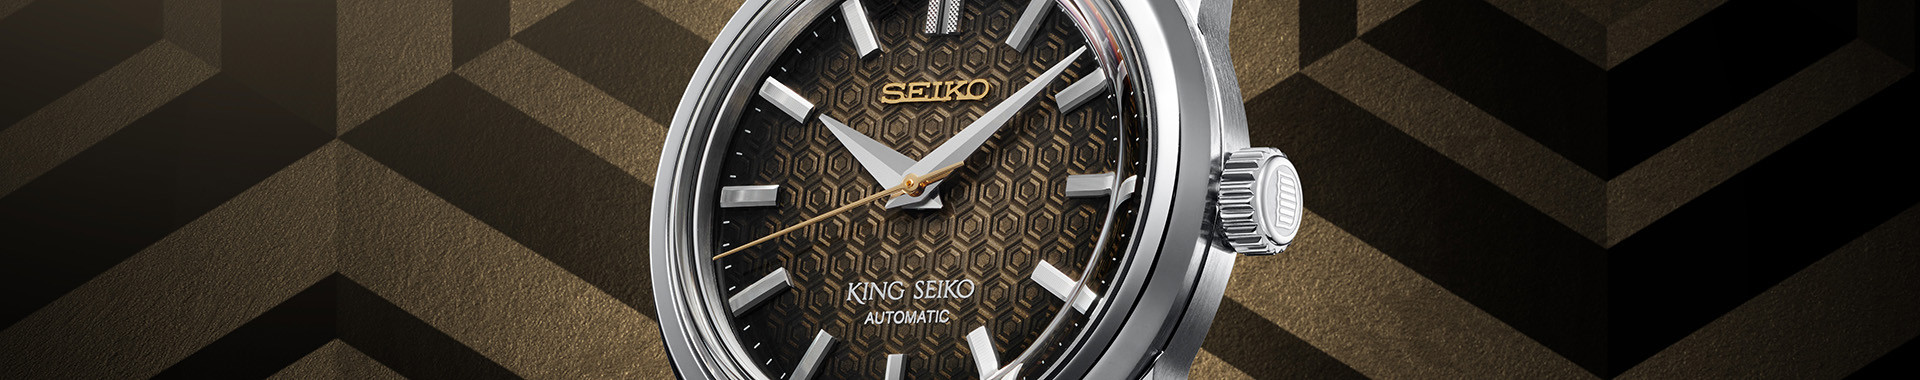 King Seiko Uomo - Boutique Seiko